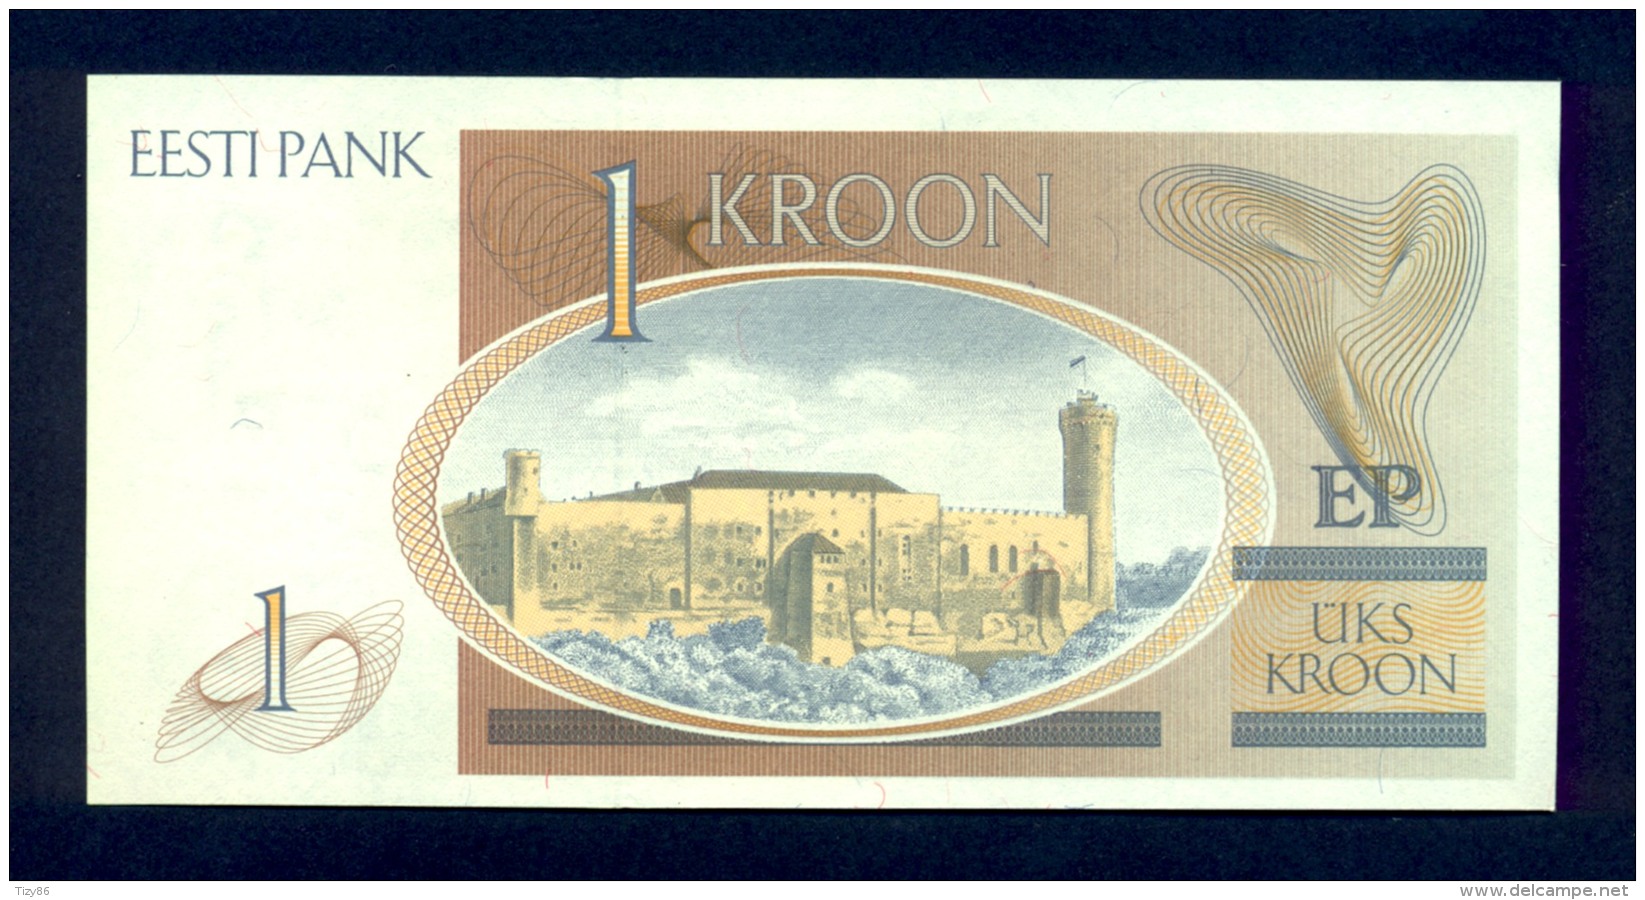 Banconota Estonia 1 Kroon 1992 -FDS - Estland